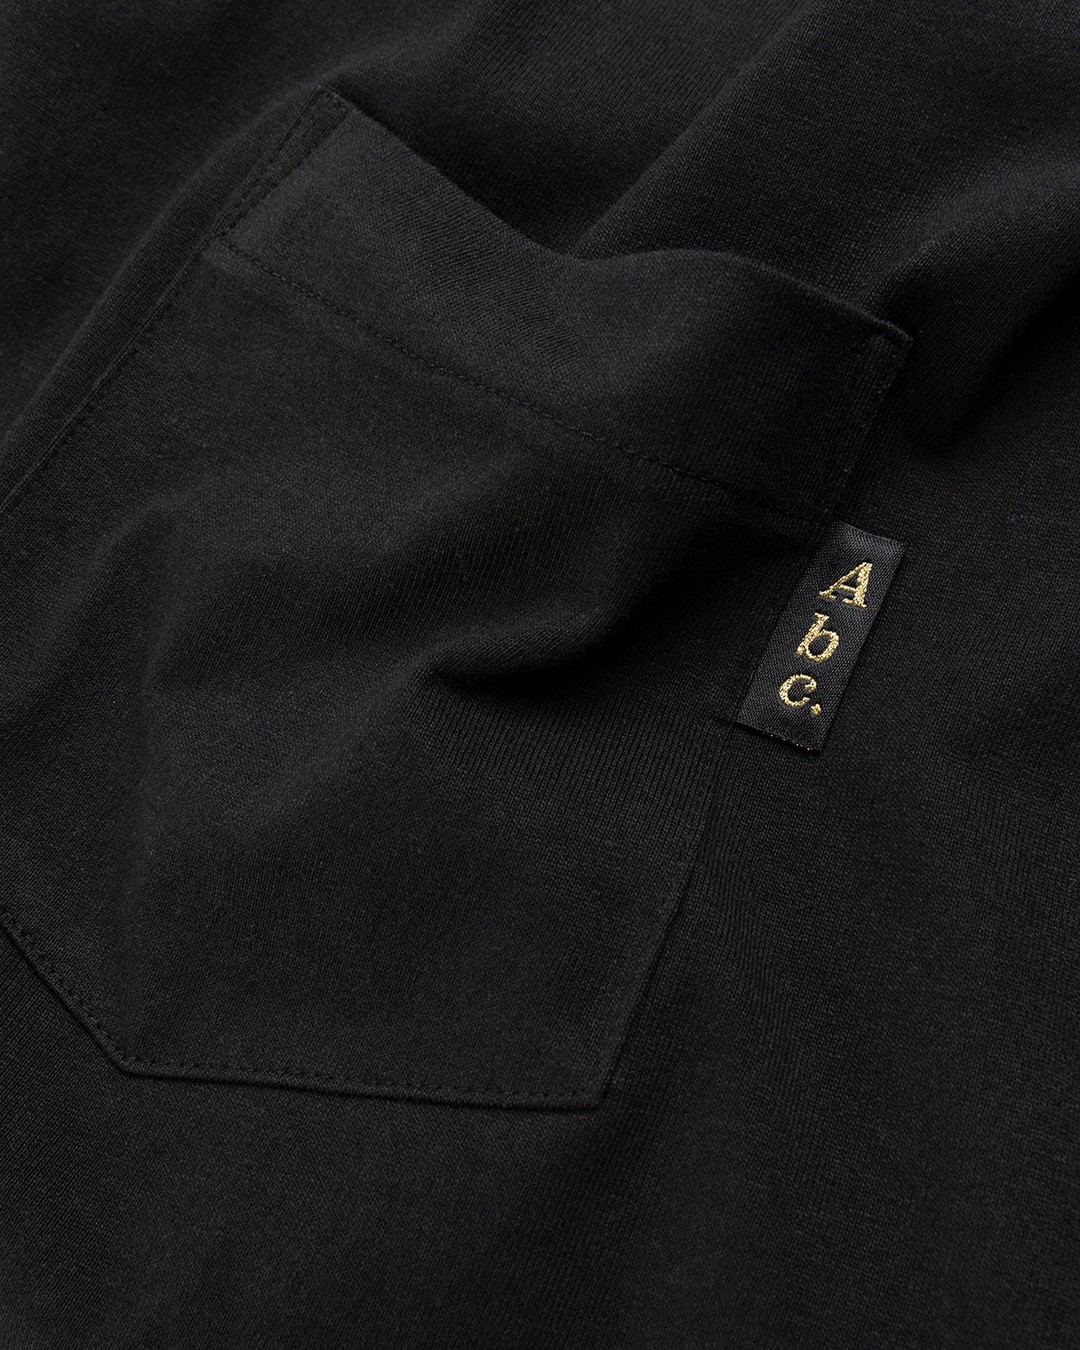 Abc. – Short-Sleeve Pocket Tee Anthracite - T-shirts - Black - Image 4